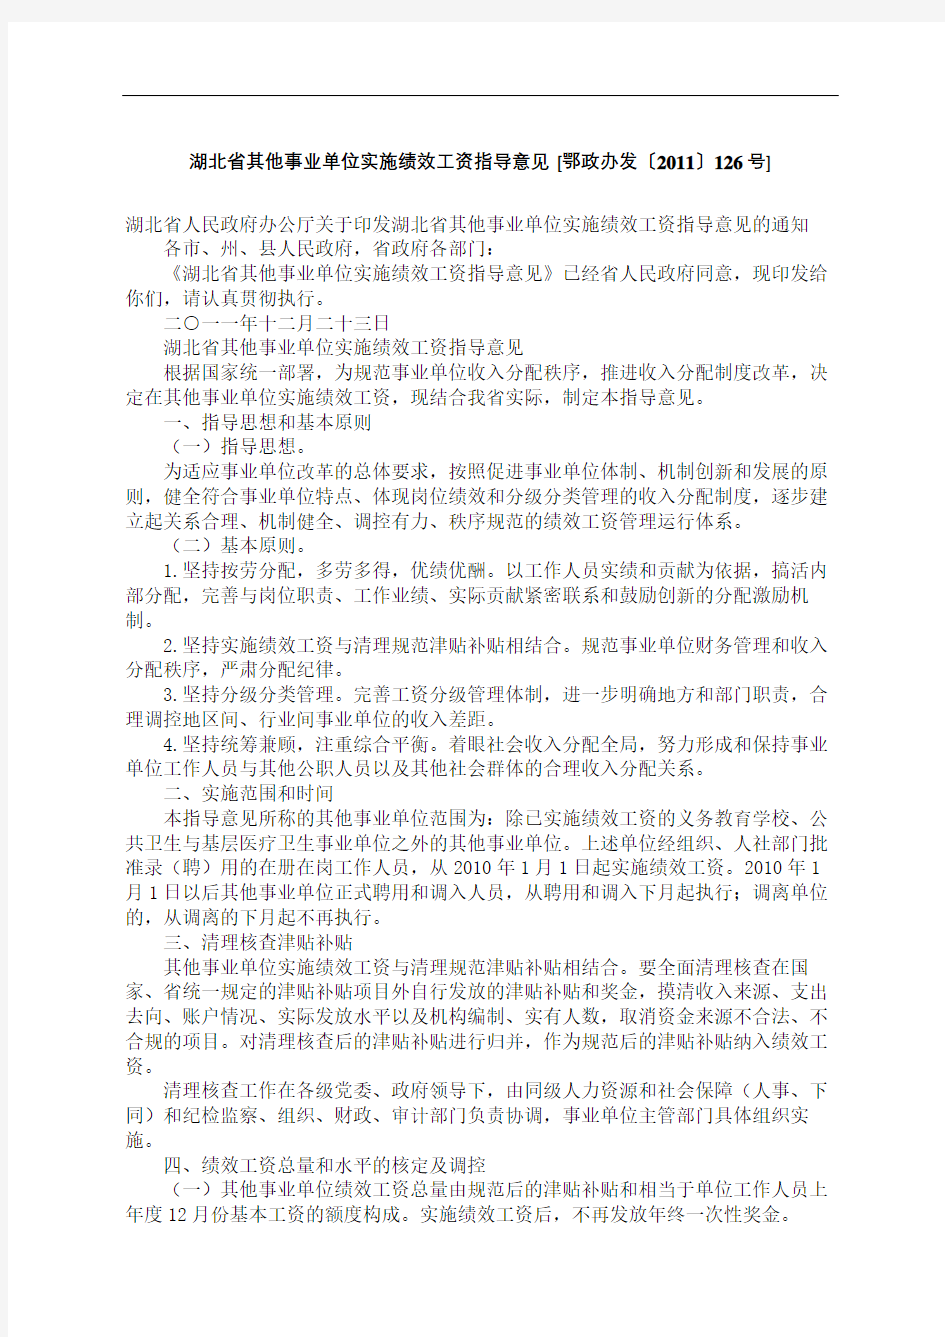 湖北省其他事业单位实施绩效工资指导意见鄂政办发